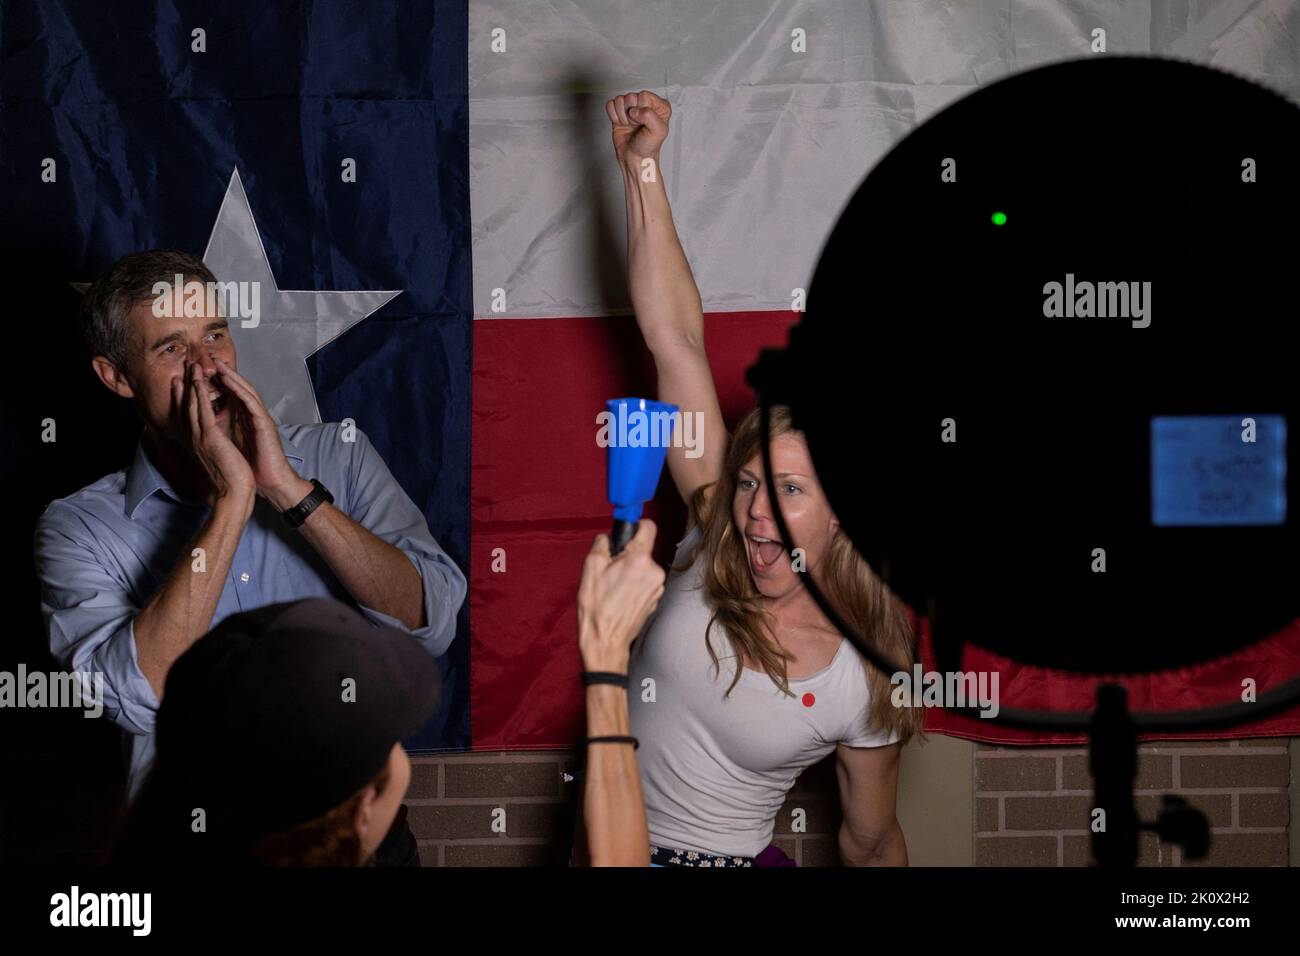 Marika Mohr, une américaine de Finlande, lève la main en tant que candidate au poste de gouverneur démocrate du Texas et l'ancien membre du Congrès américain Beto O'Rourke criait « premier électeur », avant de poser avec des partisans devant le drapeau de l'État du Texas lors d'un événement de campagne à Houston, au Texas, aux États-Unis, au 13 septembre 2022. REUTERS/adrees Latif IMAGES TPX DU JOUR Banque D'Images